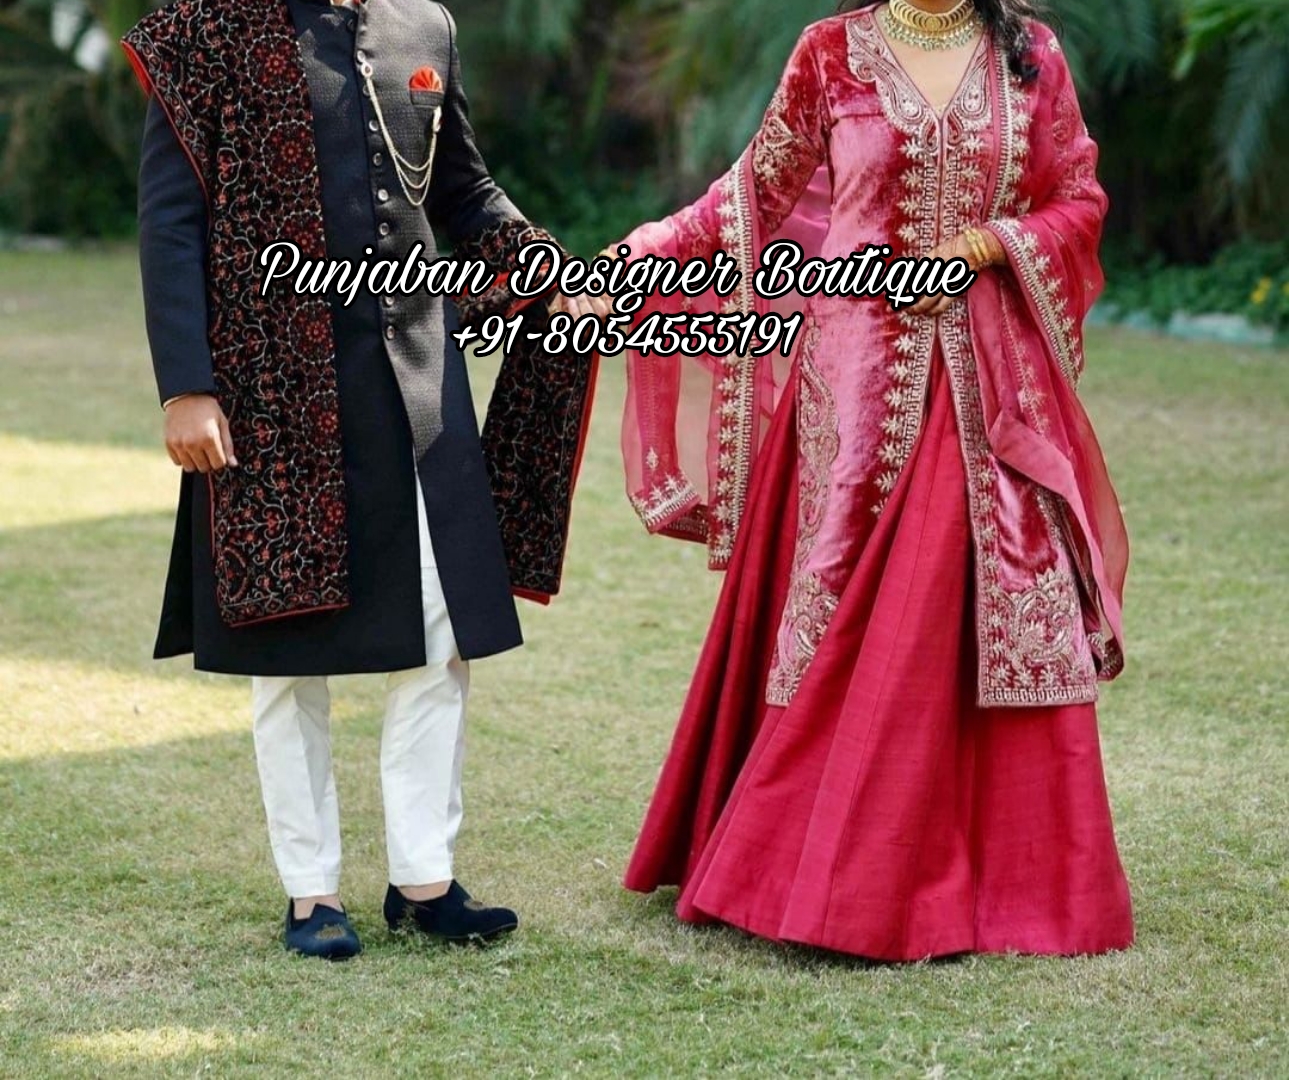 7 Indian Wedding Dresses to Wear  MalluFarms